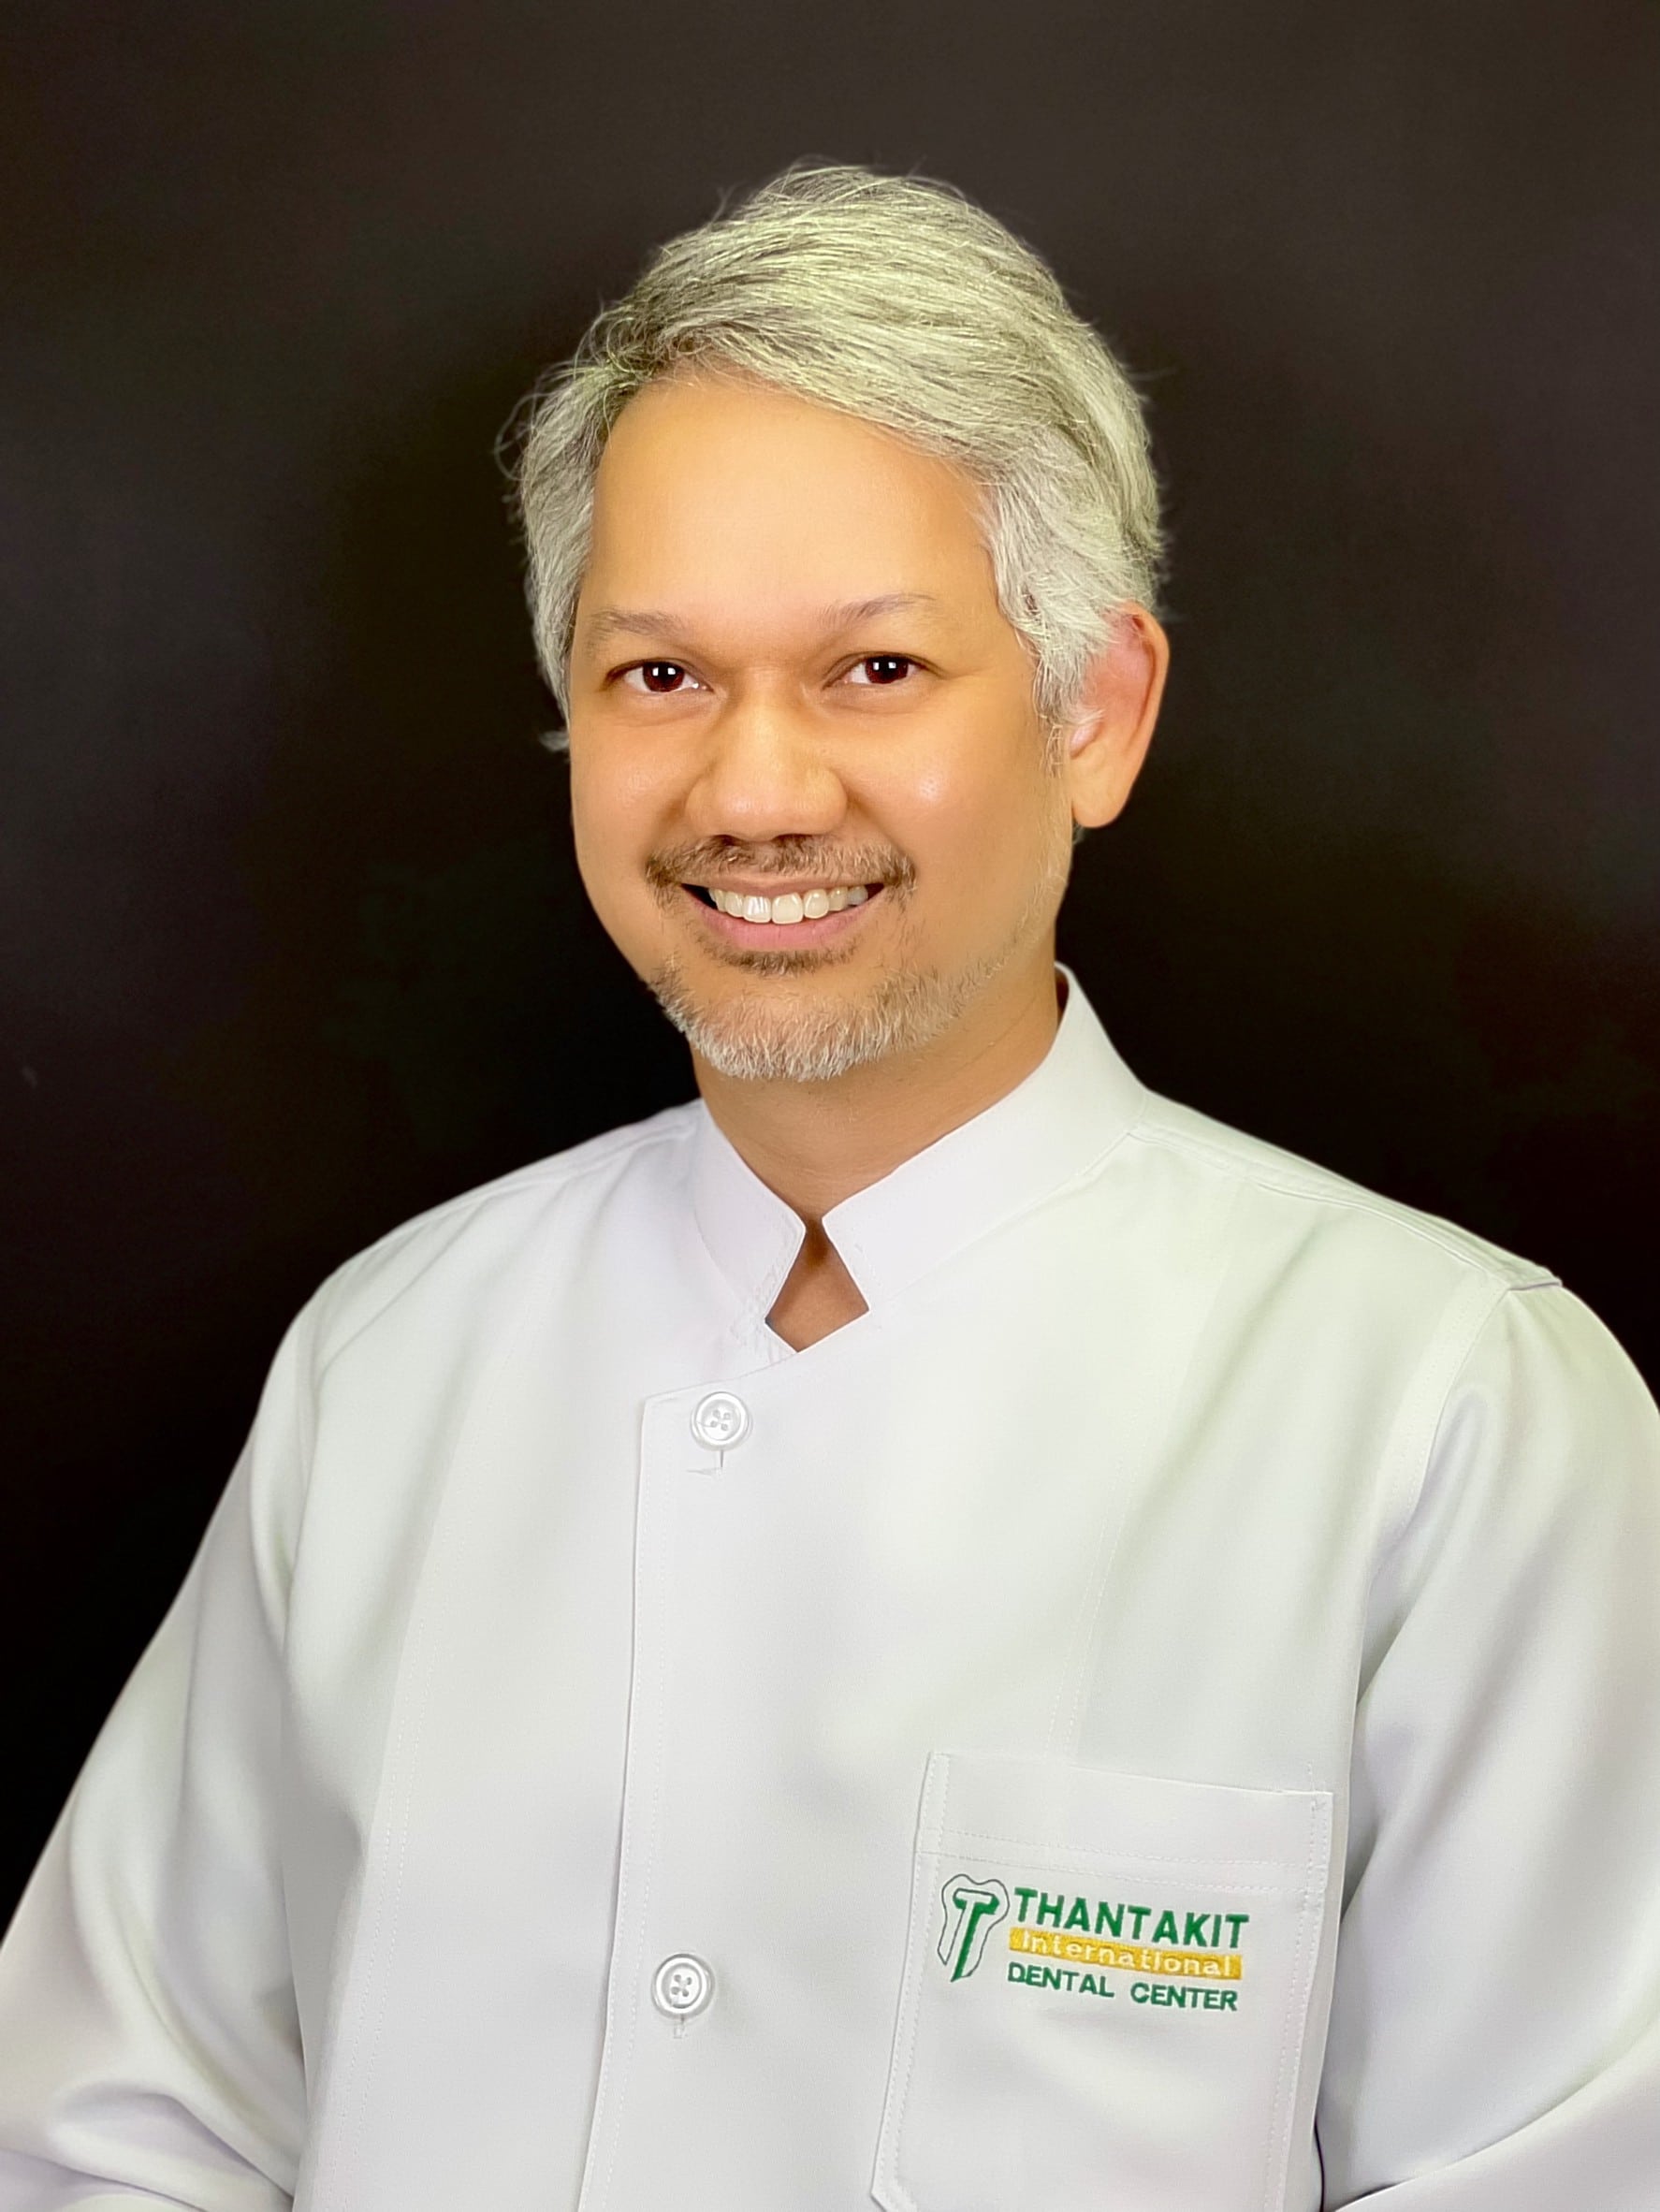 Dr. Pokpong Padungpong